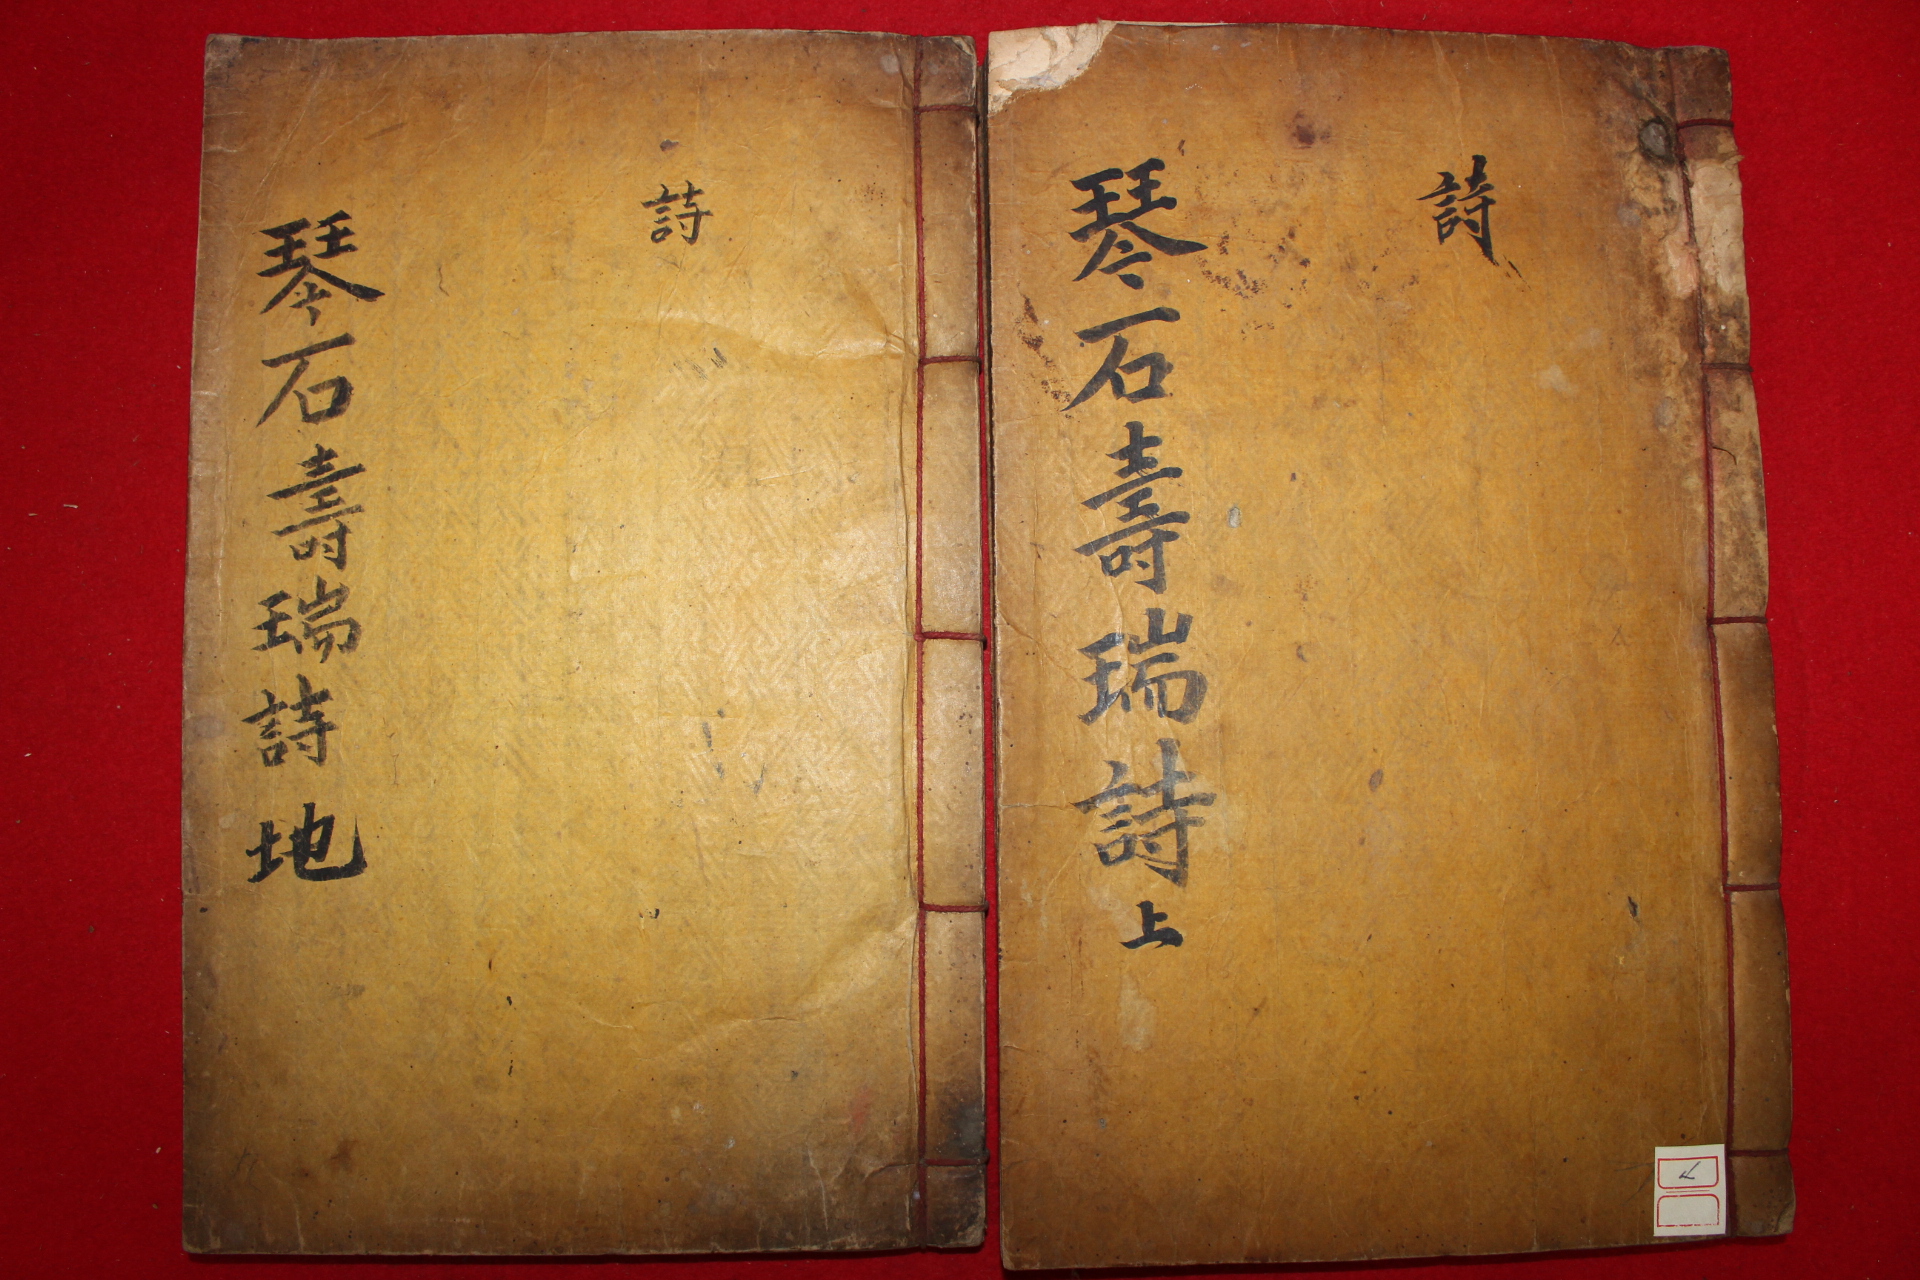 1897년 목활자본 흥선대원군의 서문 민치완(閔致完) 금석수서시(琴石壽瑞詩)2책완질